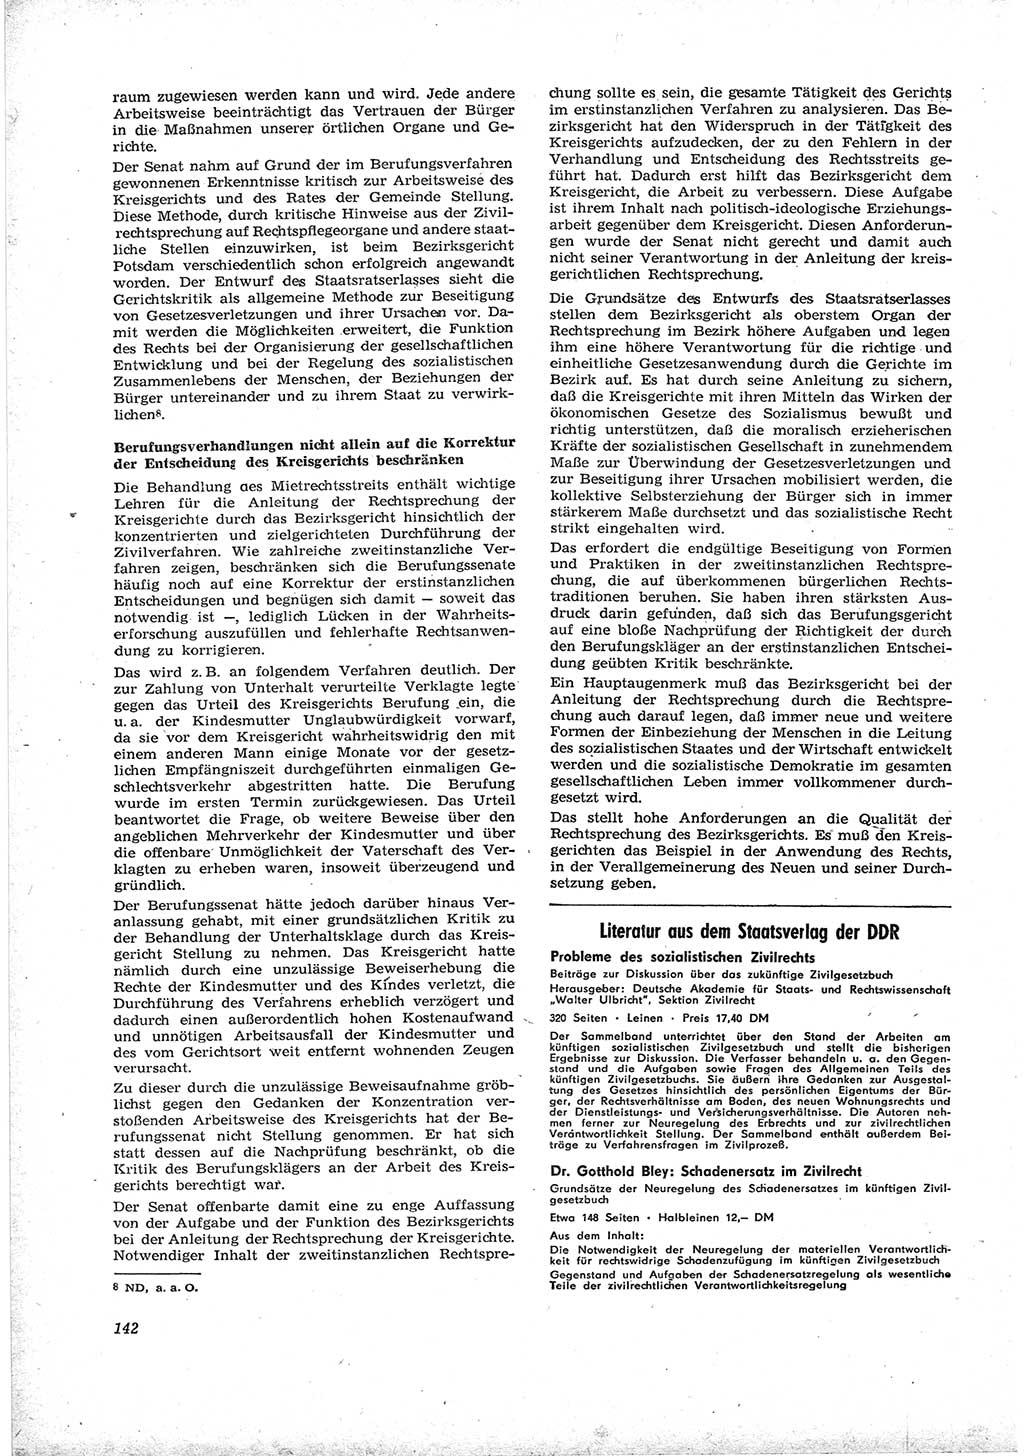 Neue Justiz (NJ), Zeitschrift für Recht und Rechtswissenschaft [Deutsche Demokratische Republik (DDR)], 17. Jahrgang 1963, Seite 142 (NJ DDR 1963, S. 142)